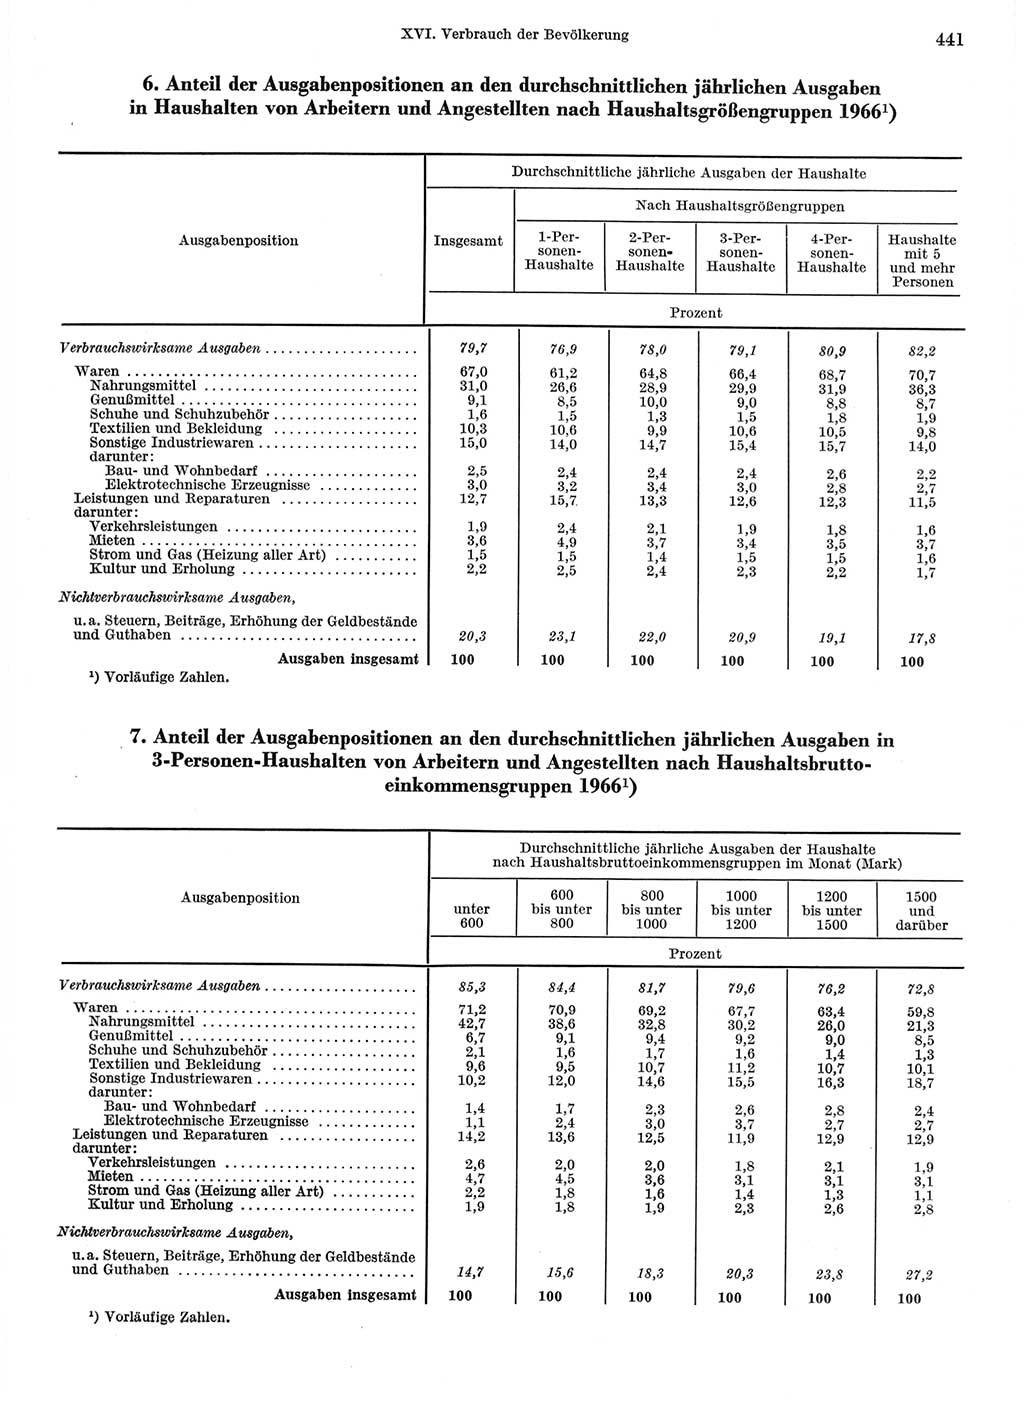 Statistisches Jahrbuch der Deutschen Demokratischen Republik (DDR) 1968, Seite 441 (Stat. Jb. DDR 1968, S. 441)